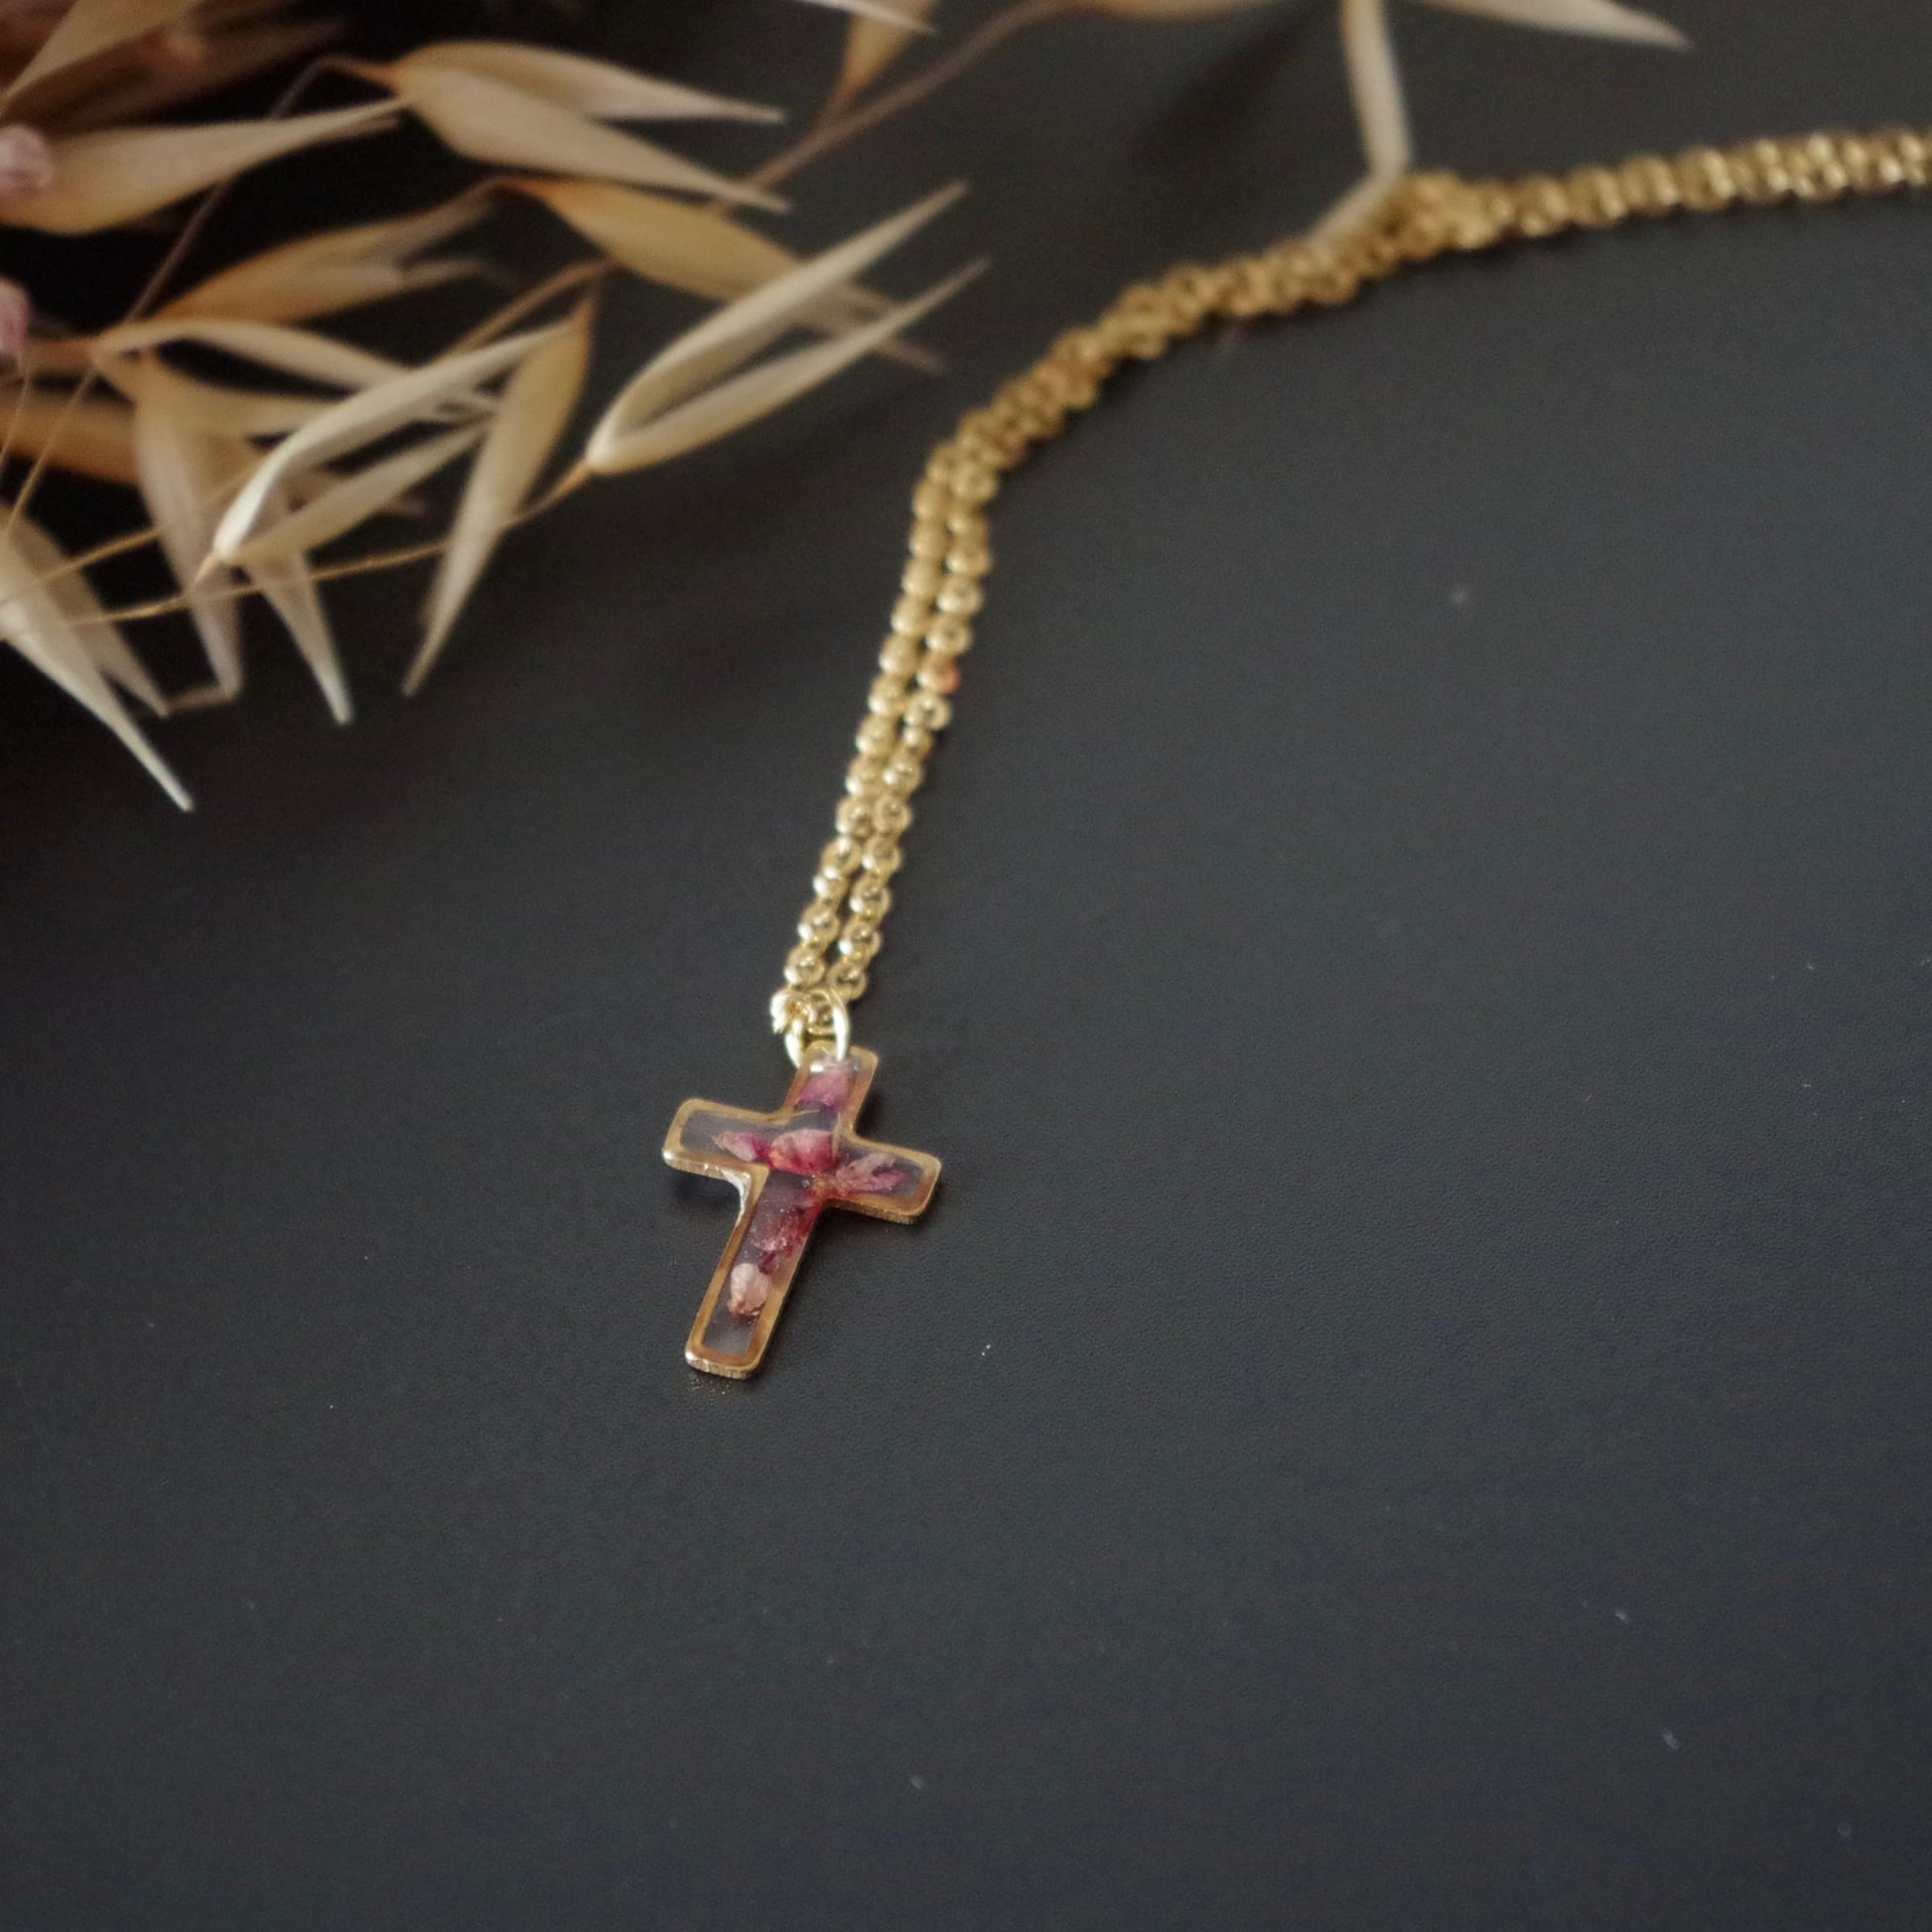 Petite croix de bruyère collier or - Lorred